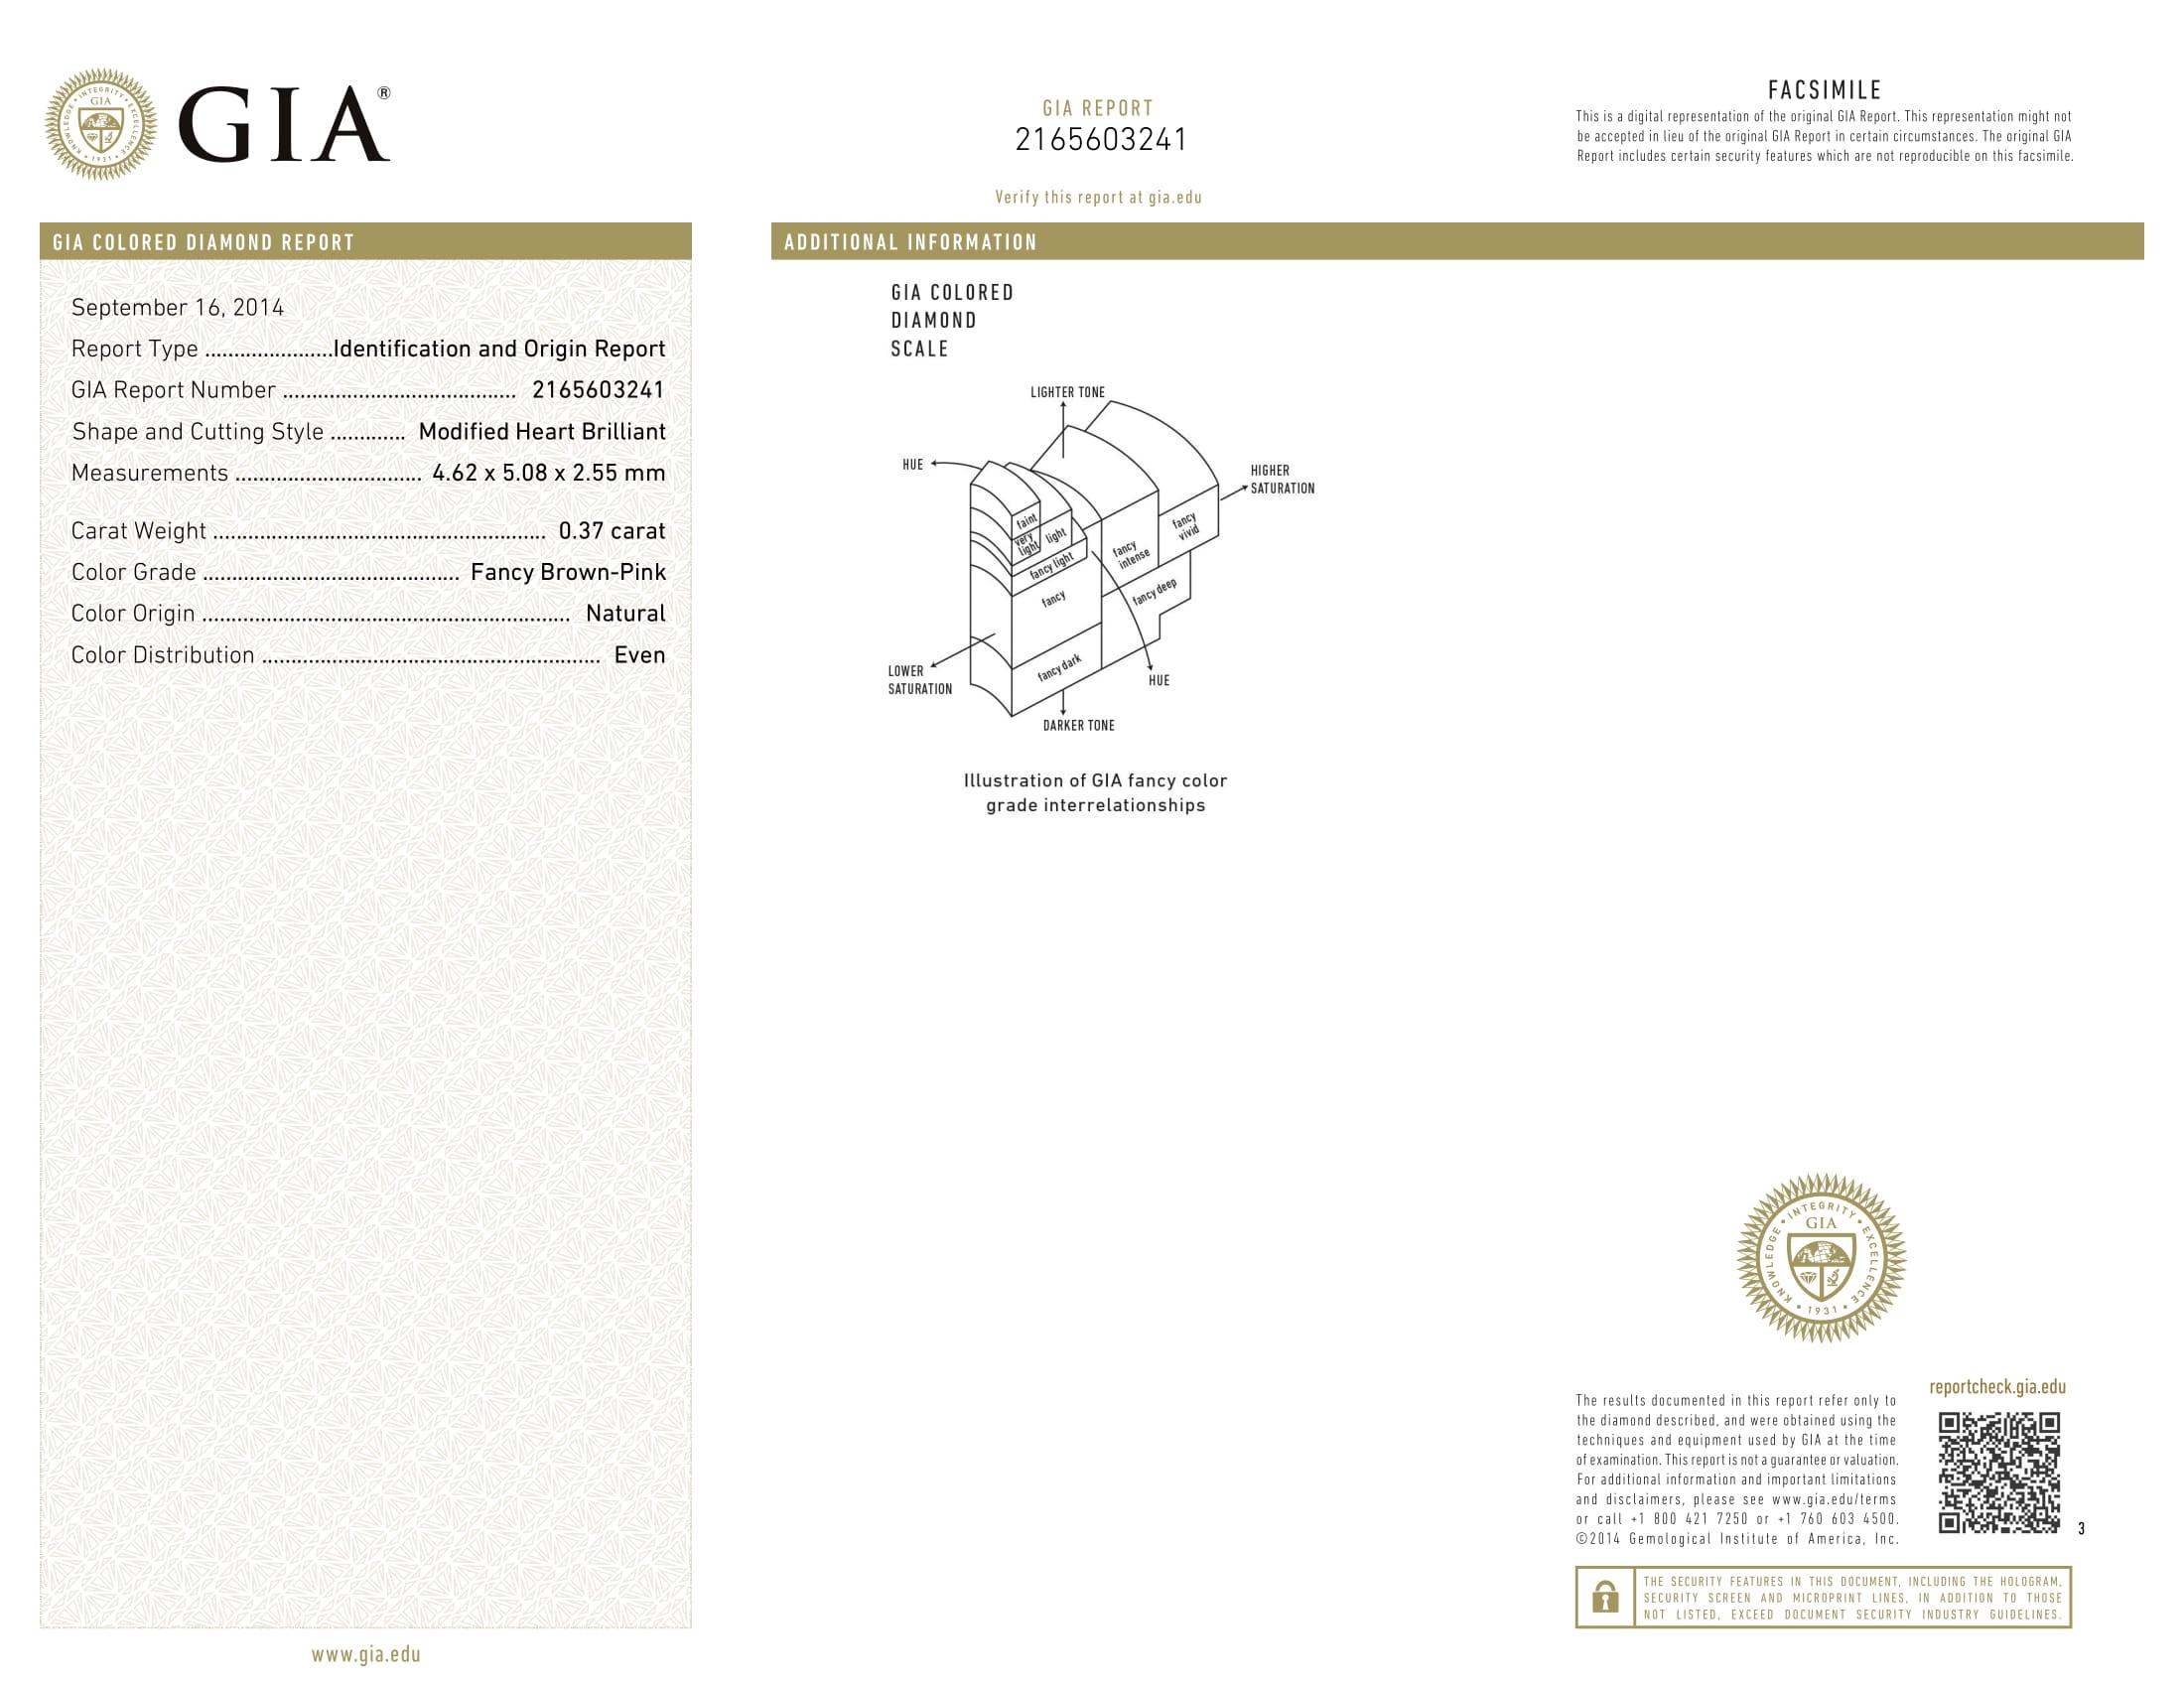 GIA Certified White Gold Fancy Diamond Heart Shape Bracelet, 7.78 Carat 4